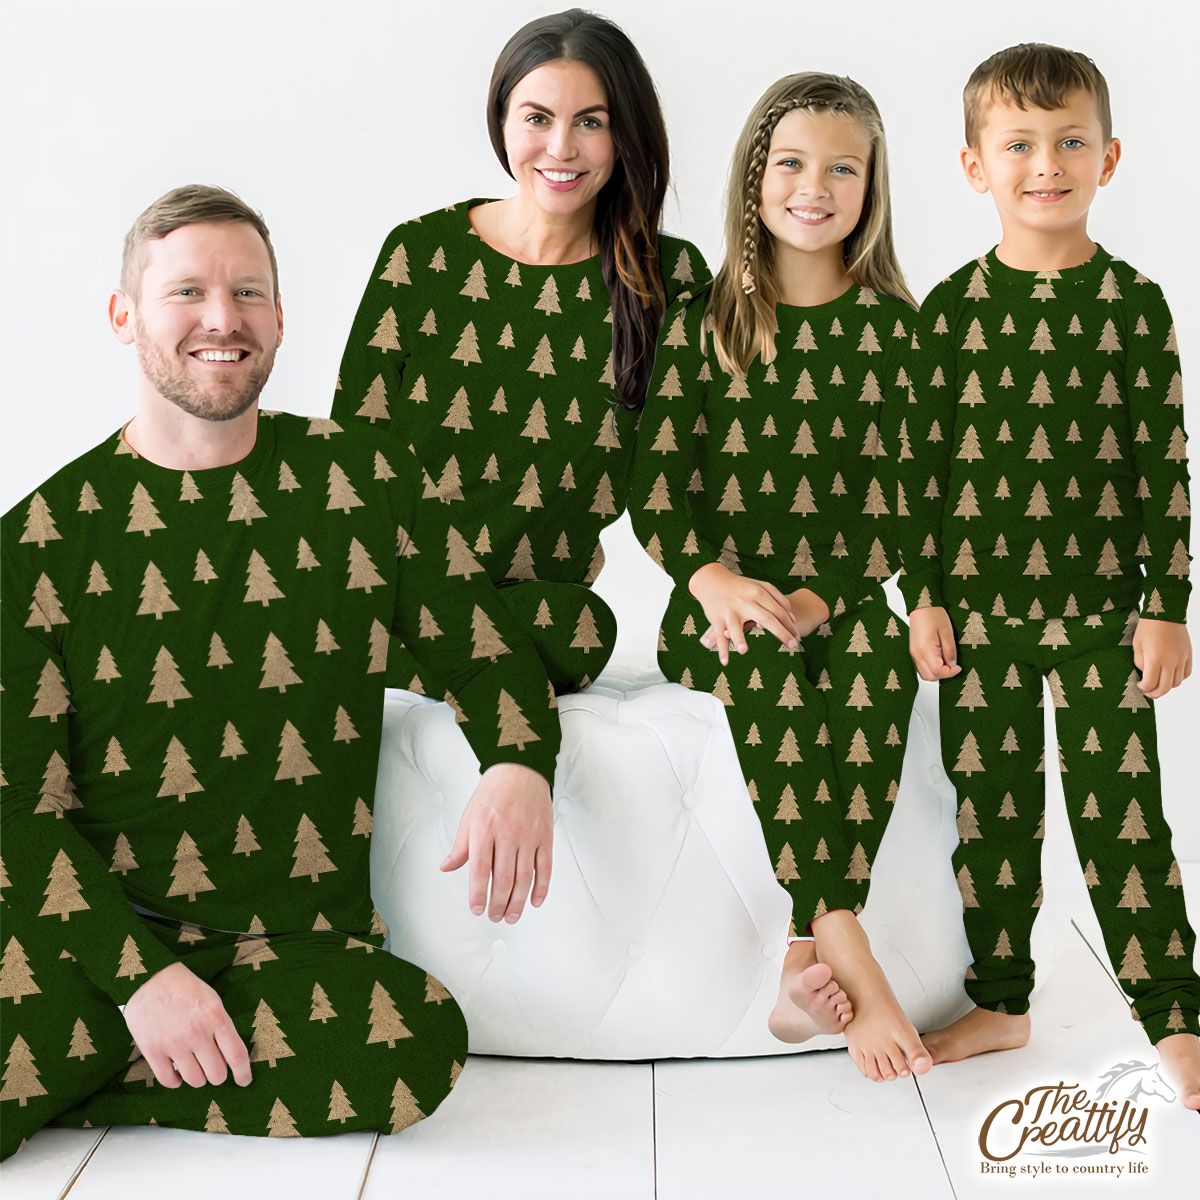 Christmas Tree, Christmas Tree Decorations, Pine Tree Pattern On Green 2 Pajamas